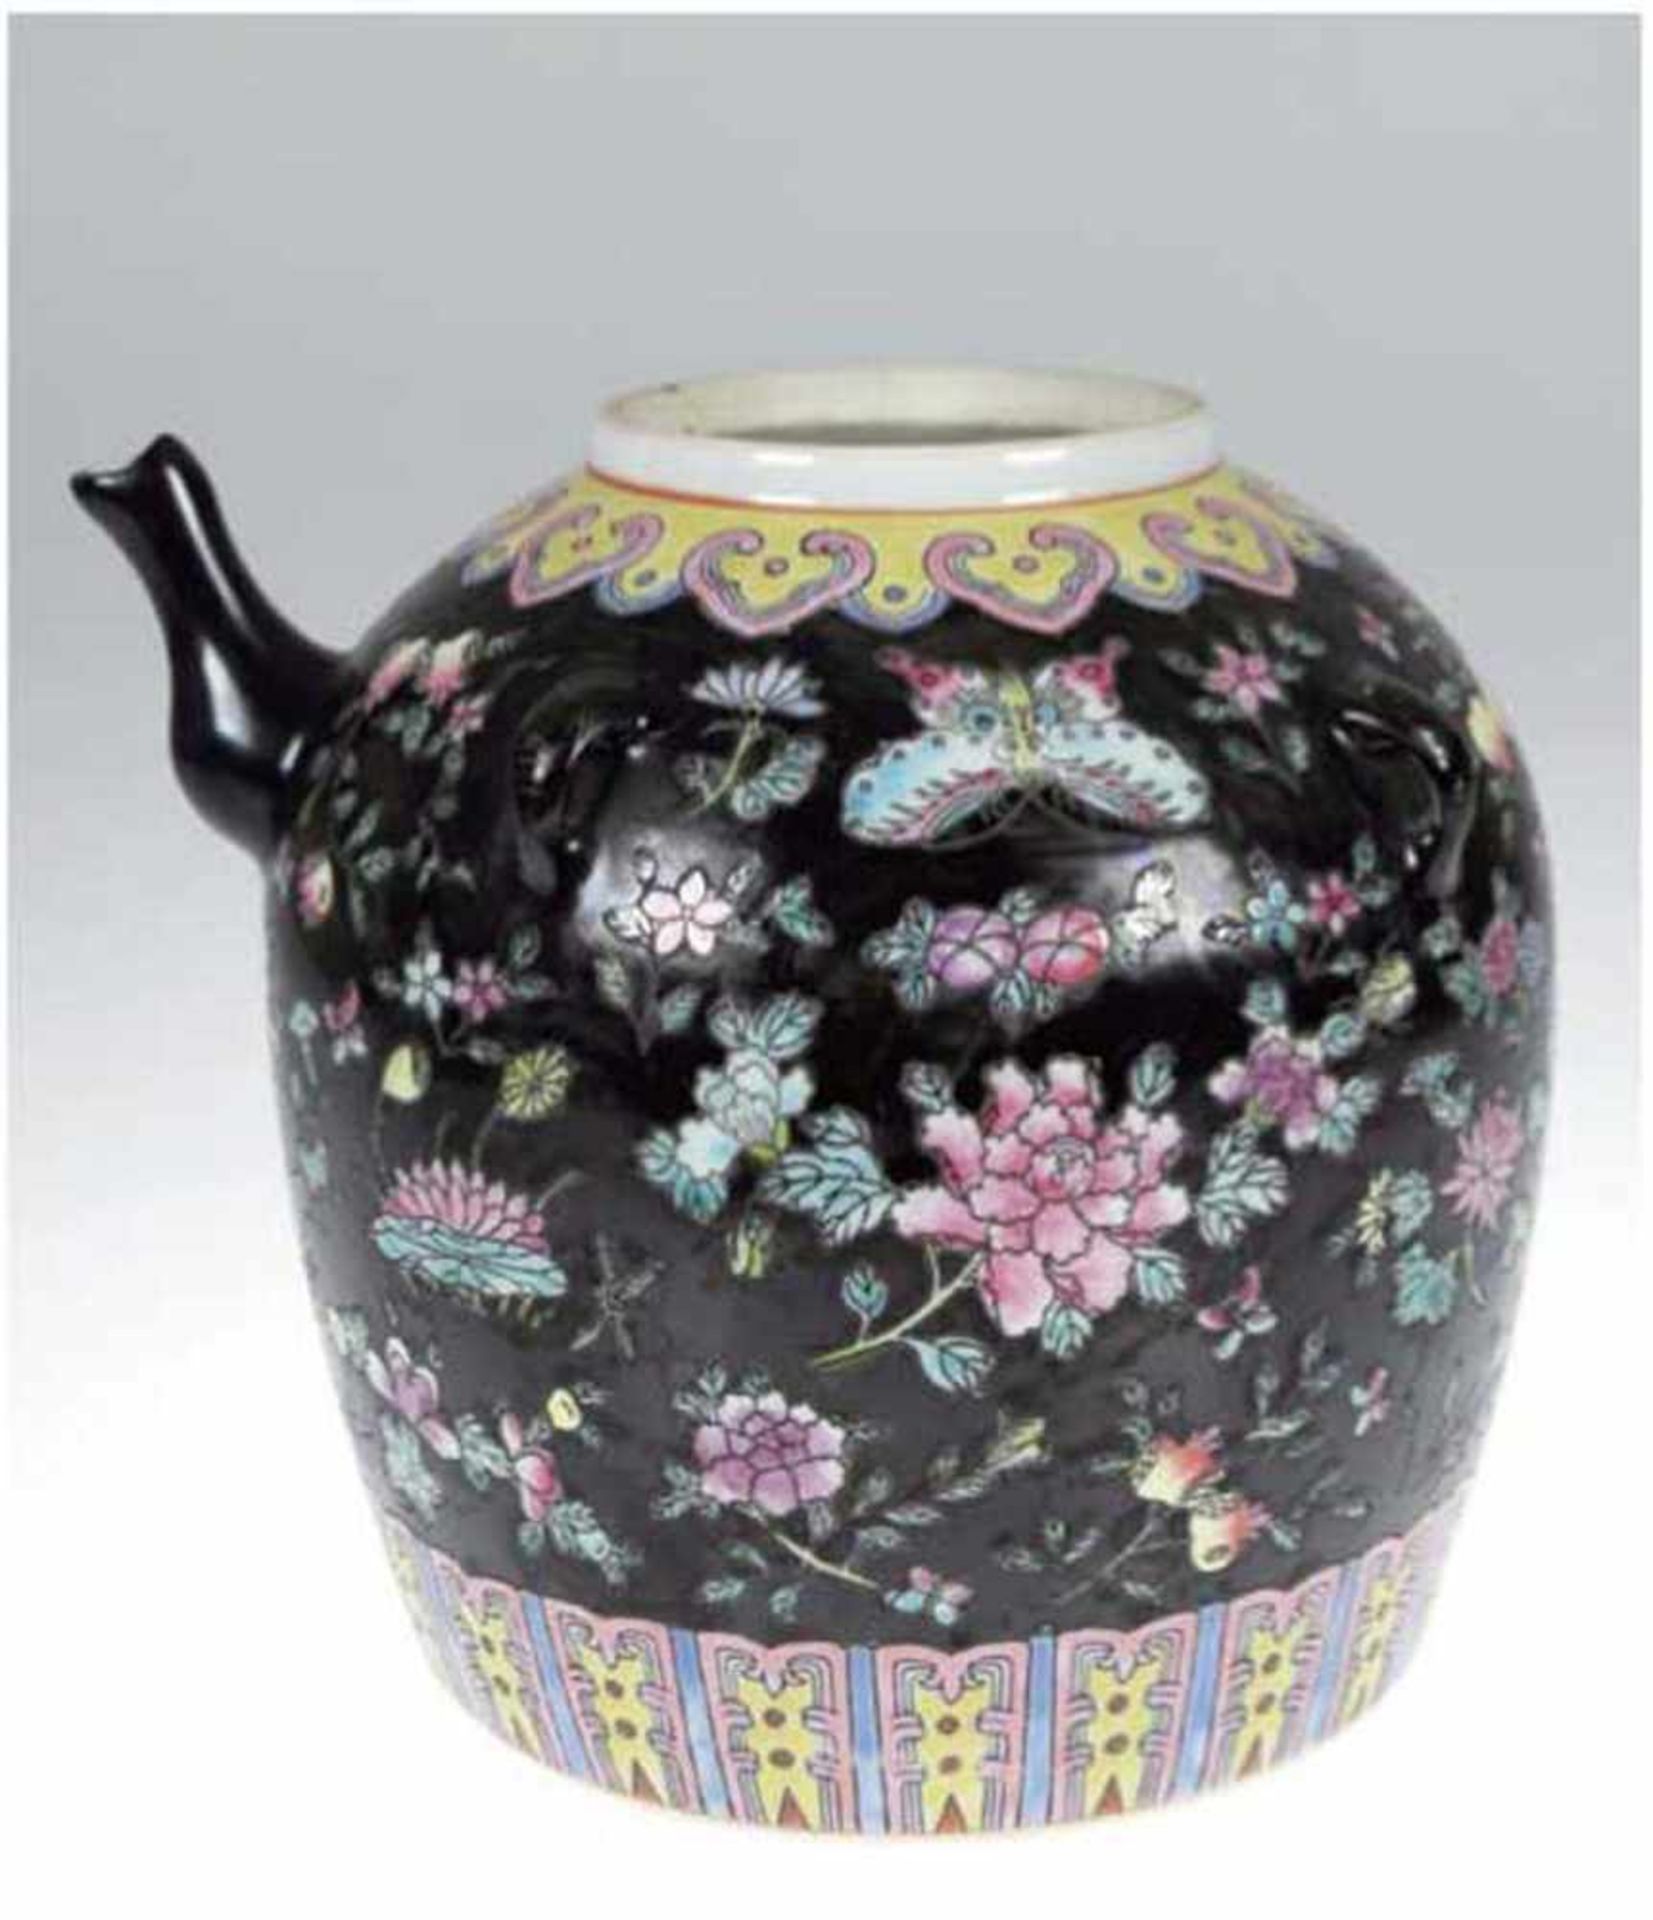 Chinesische Teekanne, Mitte 19. Jh., Porzellan, Floralmalerei auf schwarzen Grund,handbemalt,